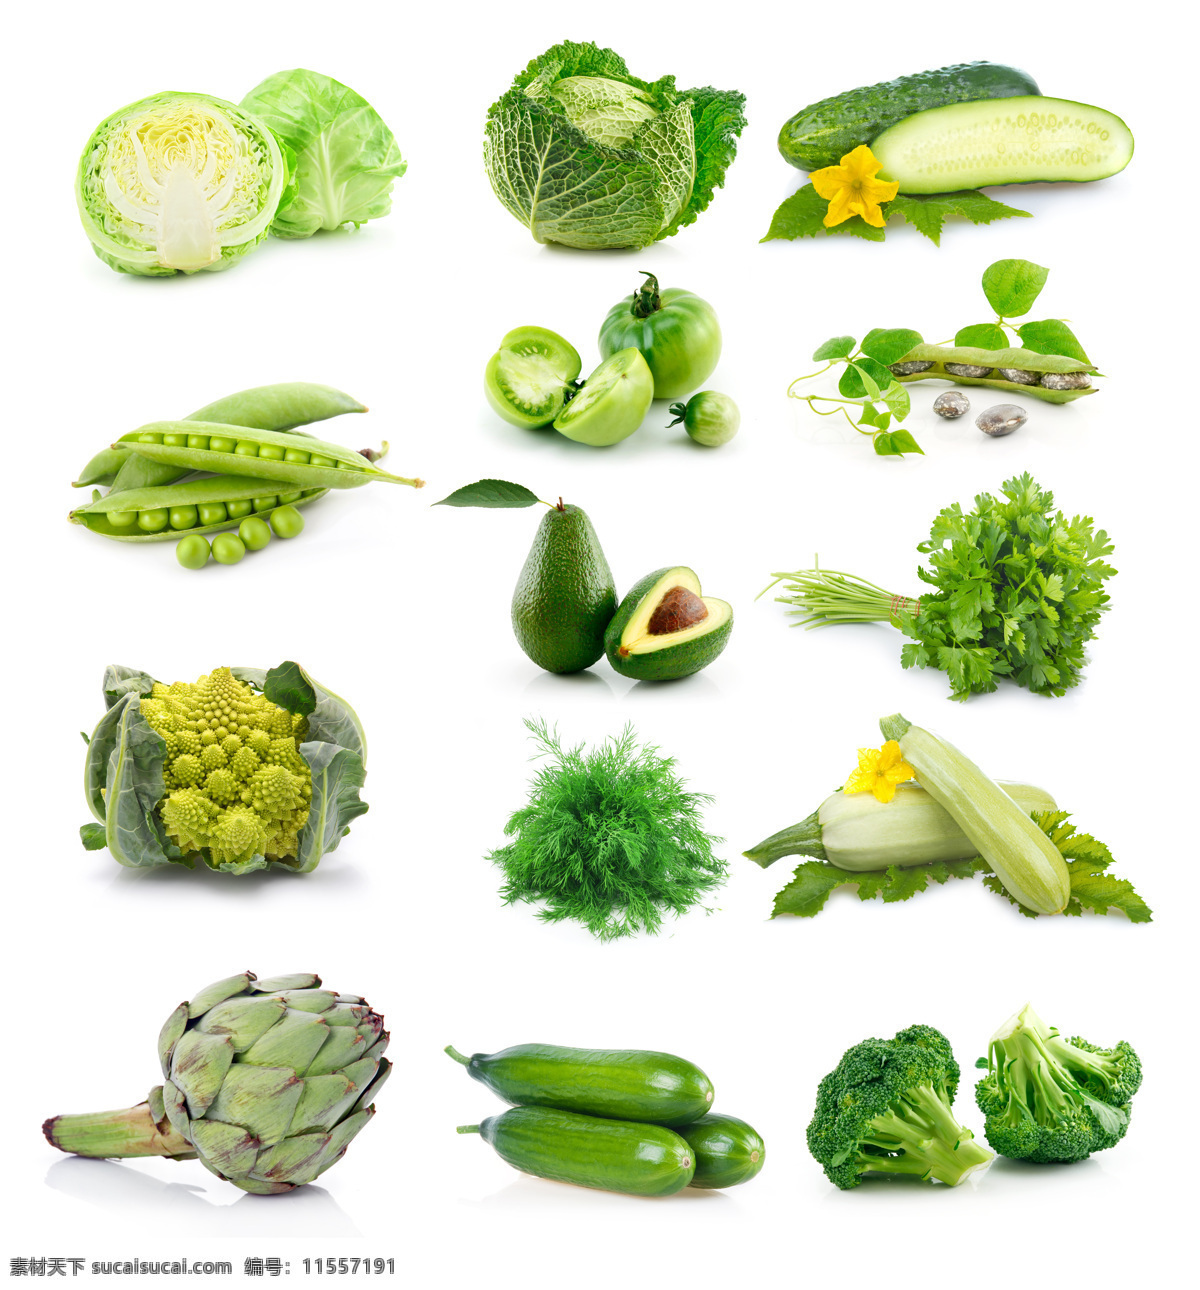 各种 绿色 蔬菜 各种绿色蔬菜 绿色蔬菜 黄瓜 南瓜 花菜 豌豆 白菜 包菜 食物原材料 餐厅美食 蔬菜图片 餐饮美食